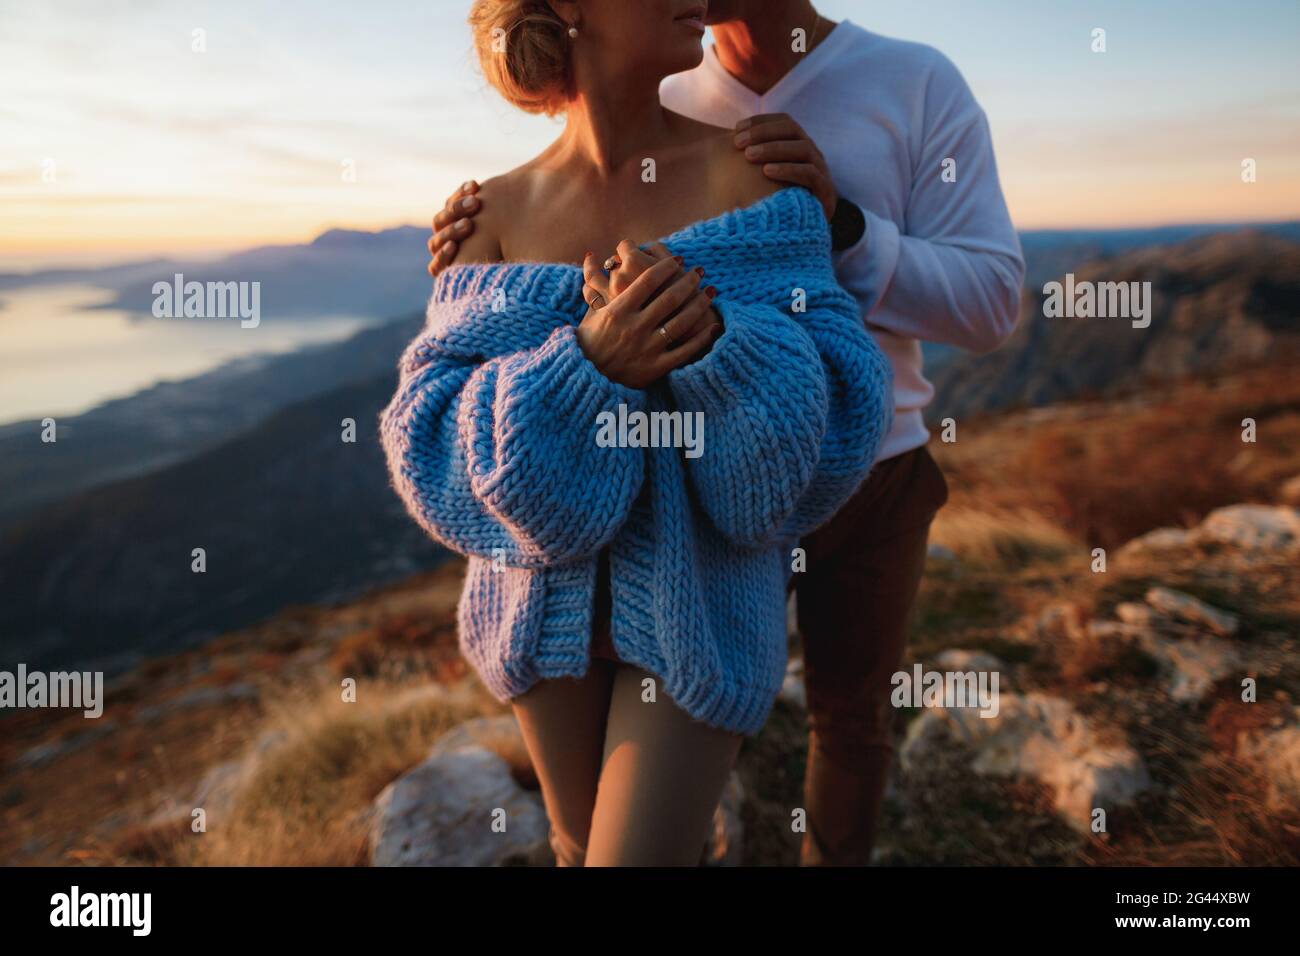 Der Mann umarmt eine Frau in einem blauen Pullover an den Schultern auf dem Hintergrund der Berge. Nahaufnahme Stockfoto